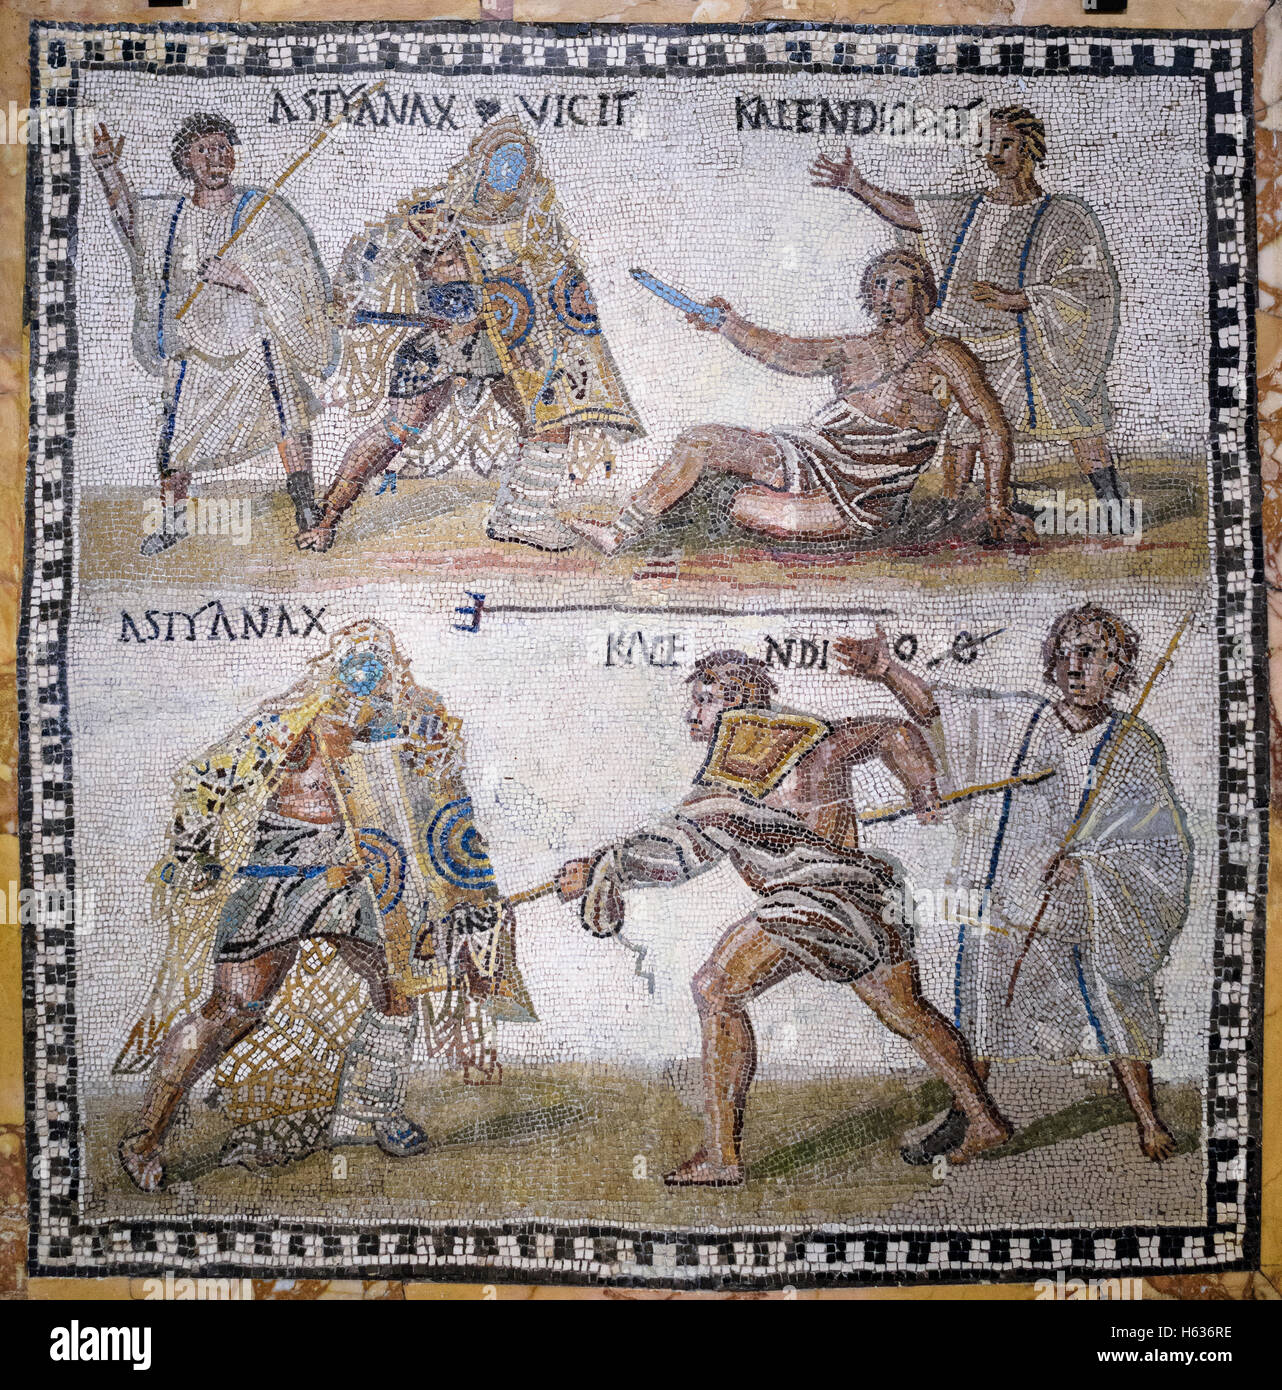 Madrid. Spagna. Secutor versus retiarius, mosaico romano, del III secolo d.c. da Roma, Museo Archeologico Nazionale di Spagna. Foto Stock